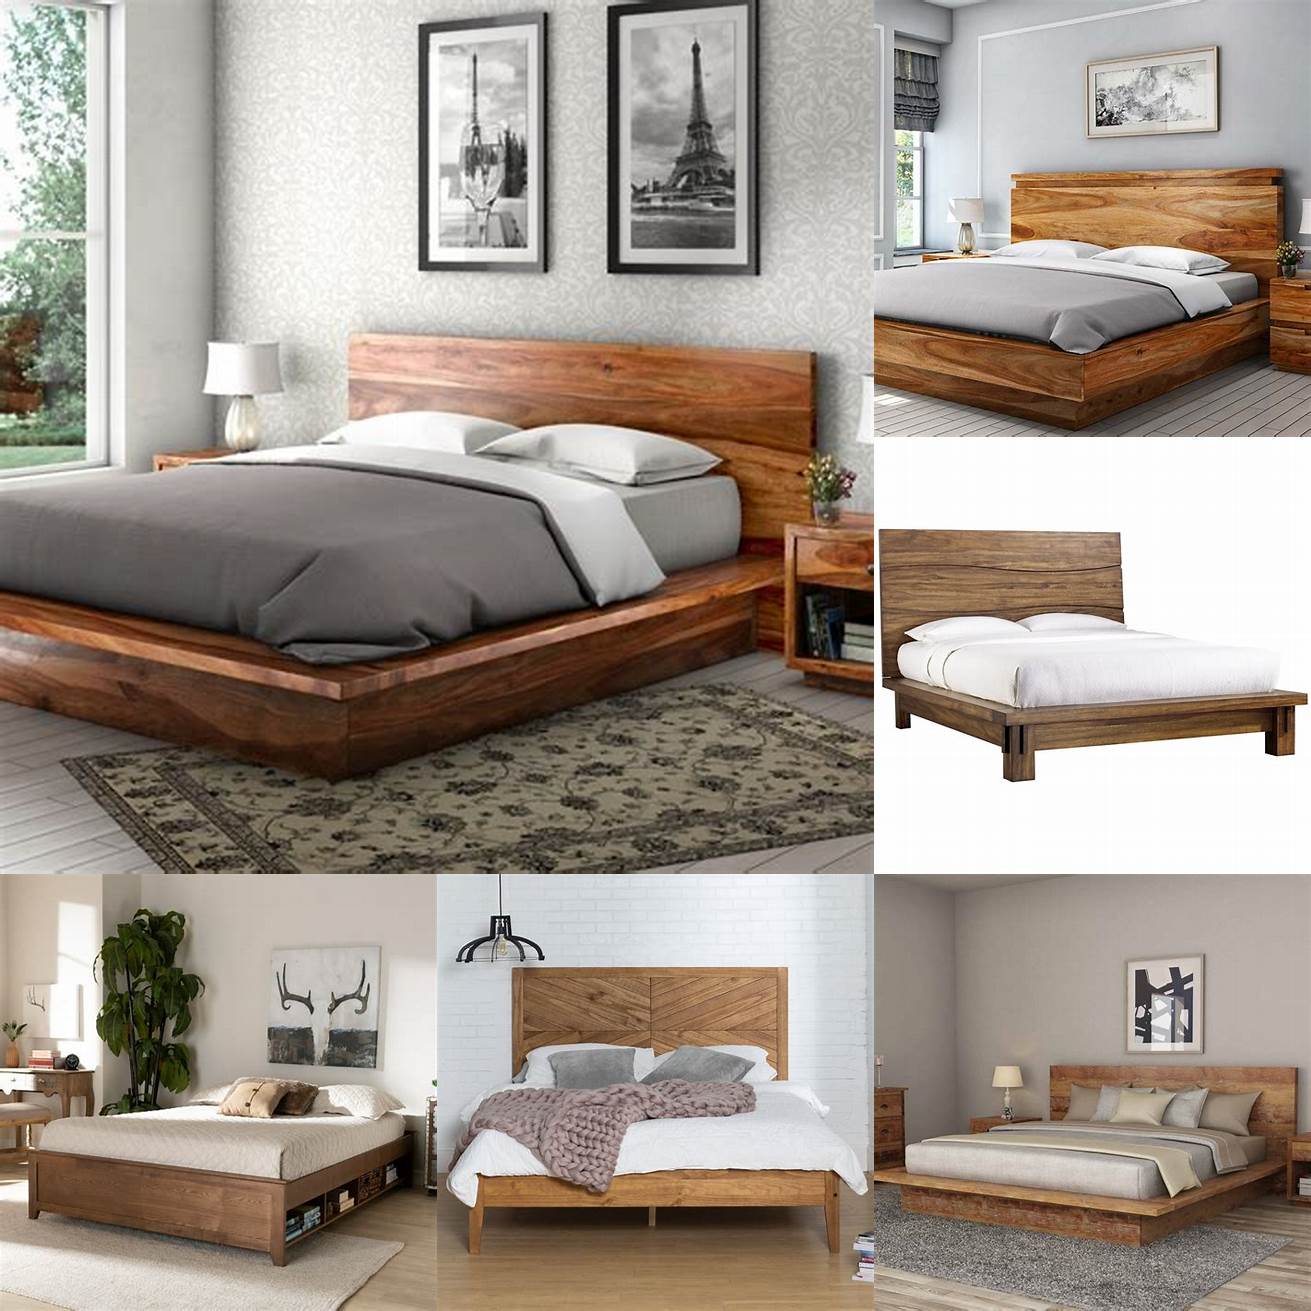 A king size platform bed frame made of solid wood